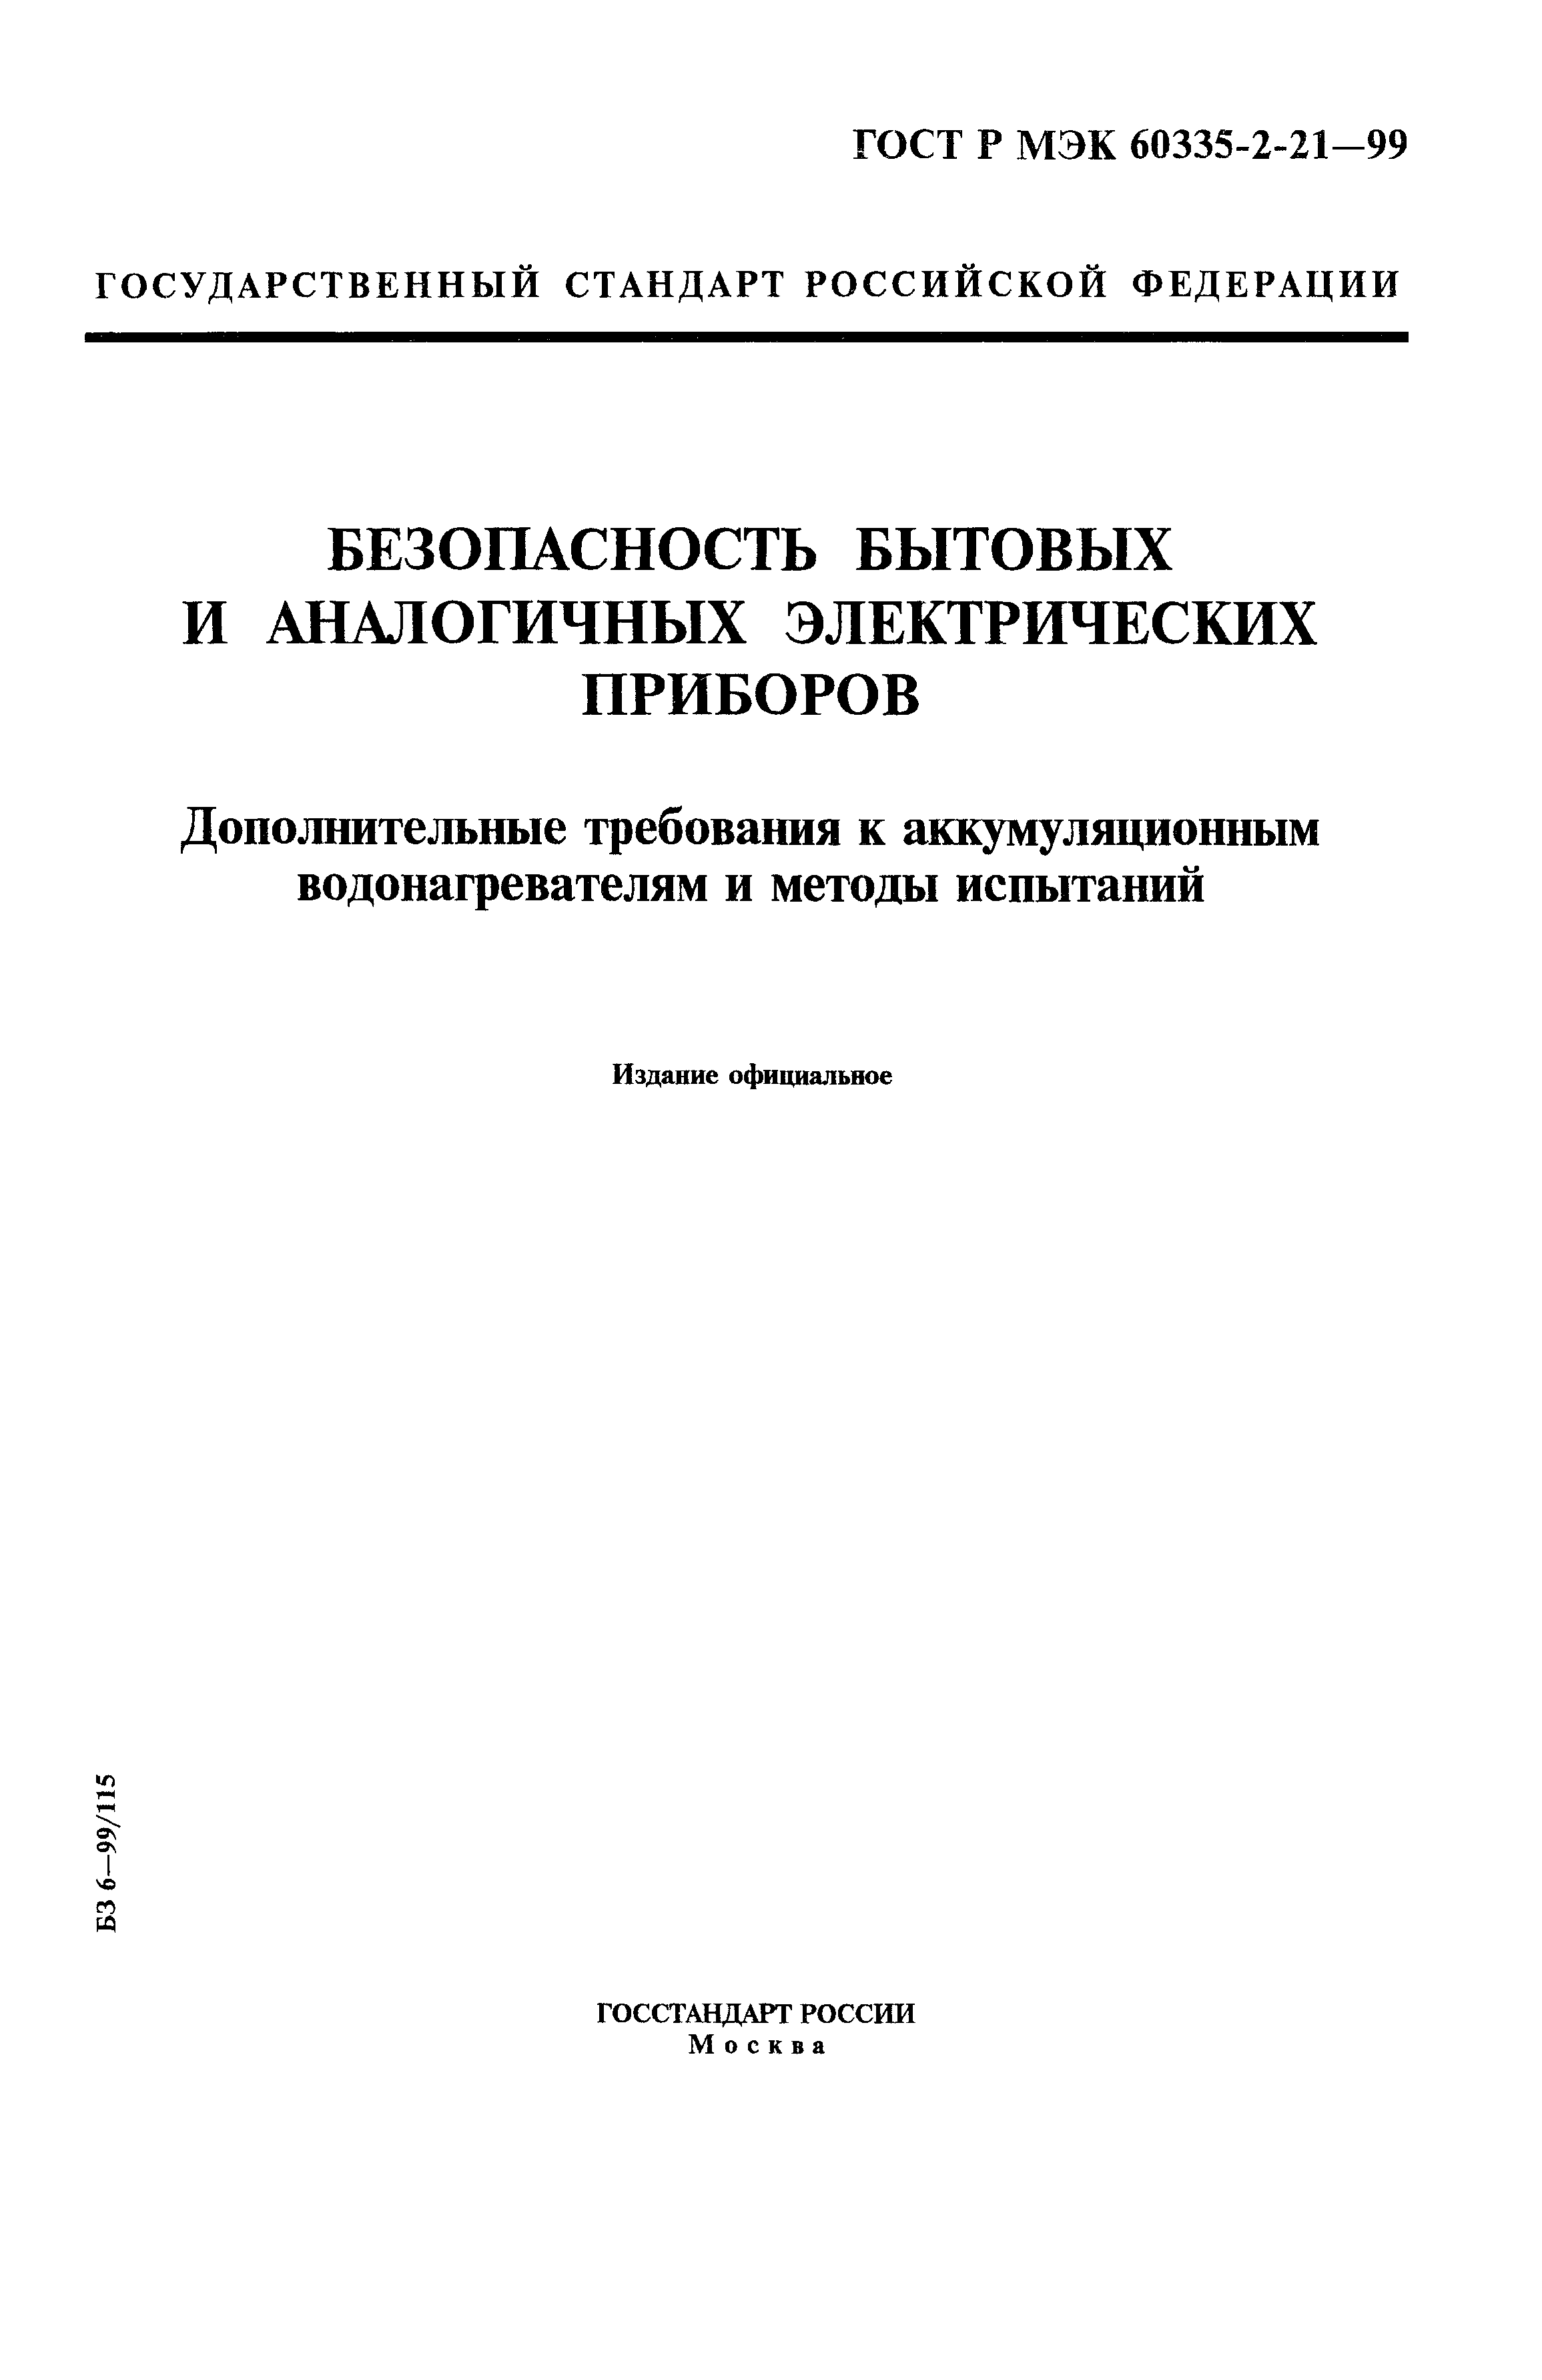 ГОСТ Р МЭК 60335-2-21-99